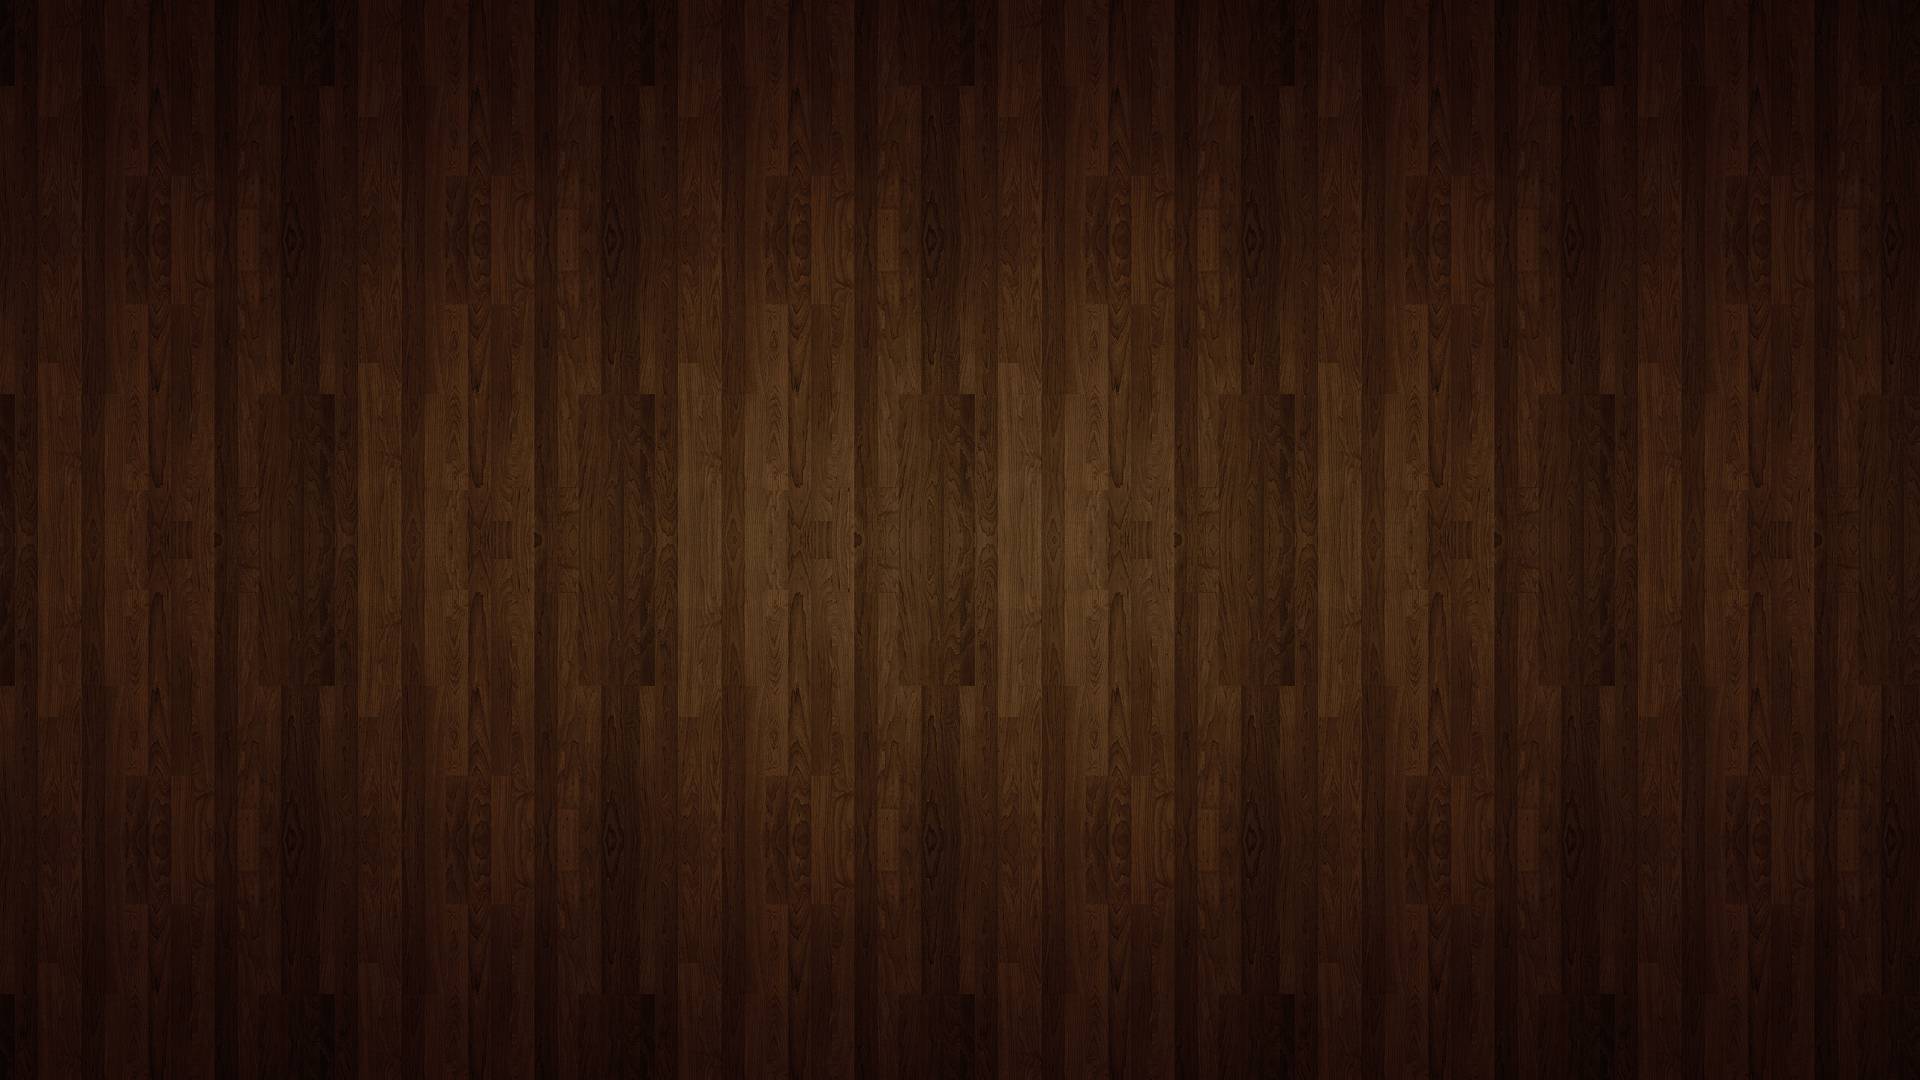 Hình nền texture gỗ: Để đổi gió, bạn hãy trang trí cho bức ảnh yêu thích của mình với hình nền texture gỗ đầy nghệ thuật. Vừa tạo được nét điểm nhấn riêng biệt, vừa trang trọng và lịch sự, hình nền texture gỗ là sự lựa chọn hoàn hảo cho một không gian hài hòa và sang trọng.